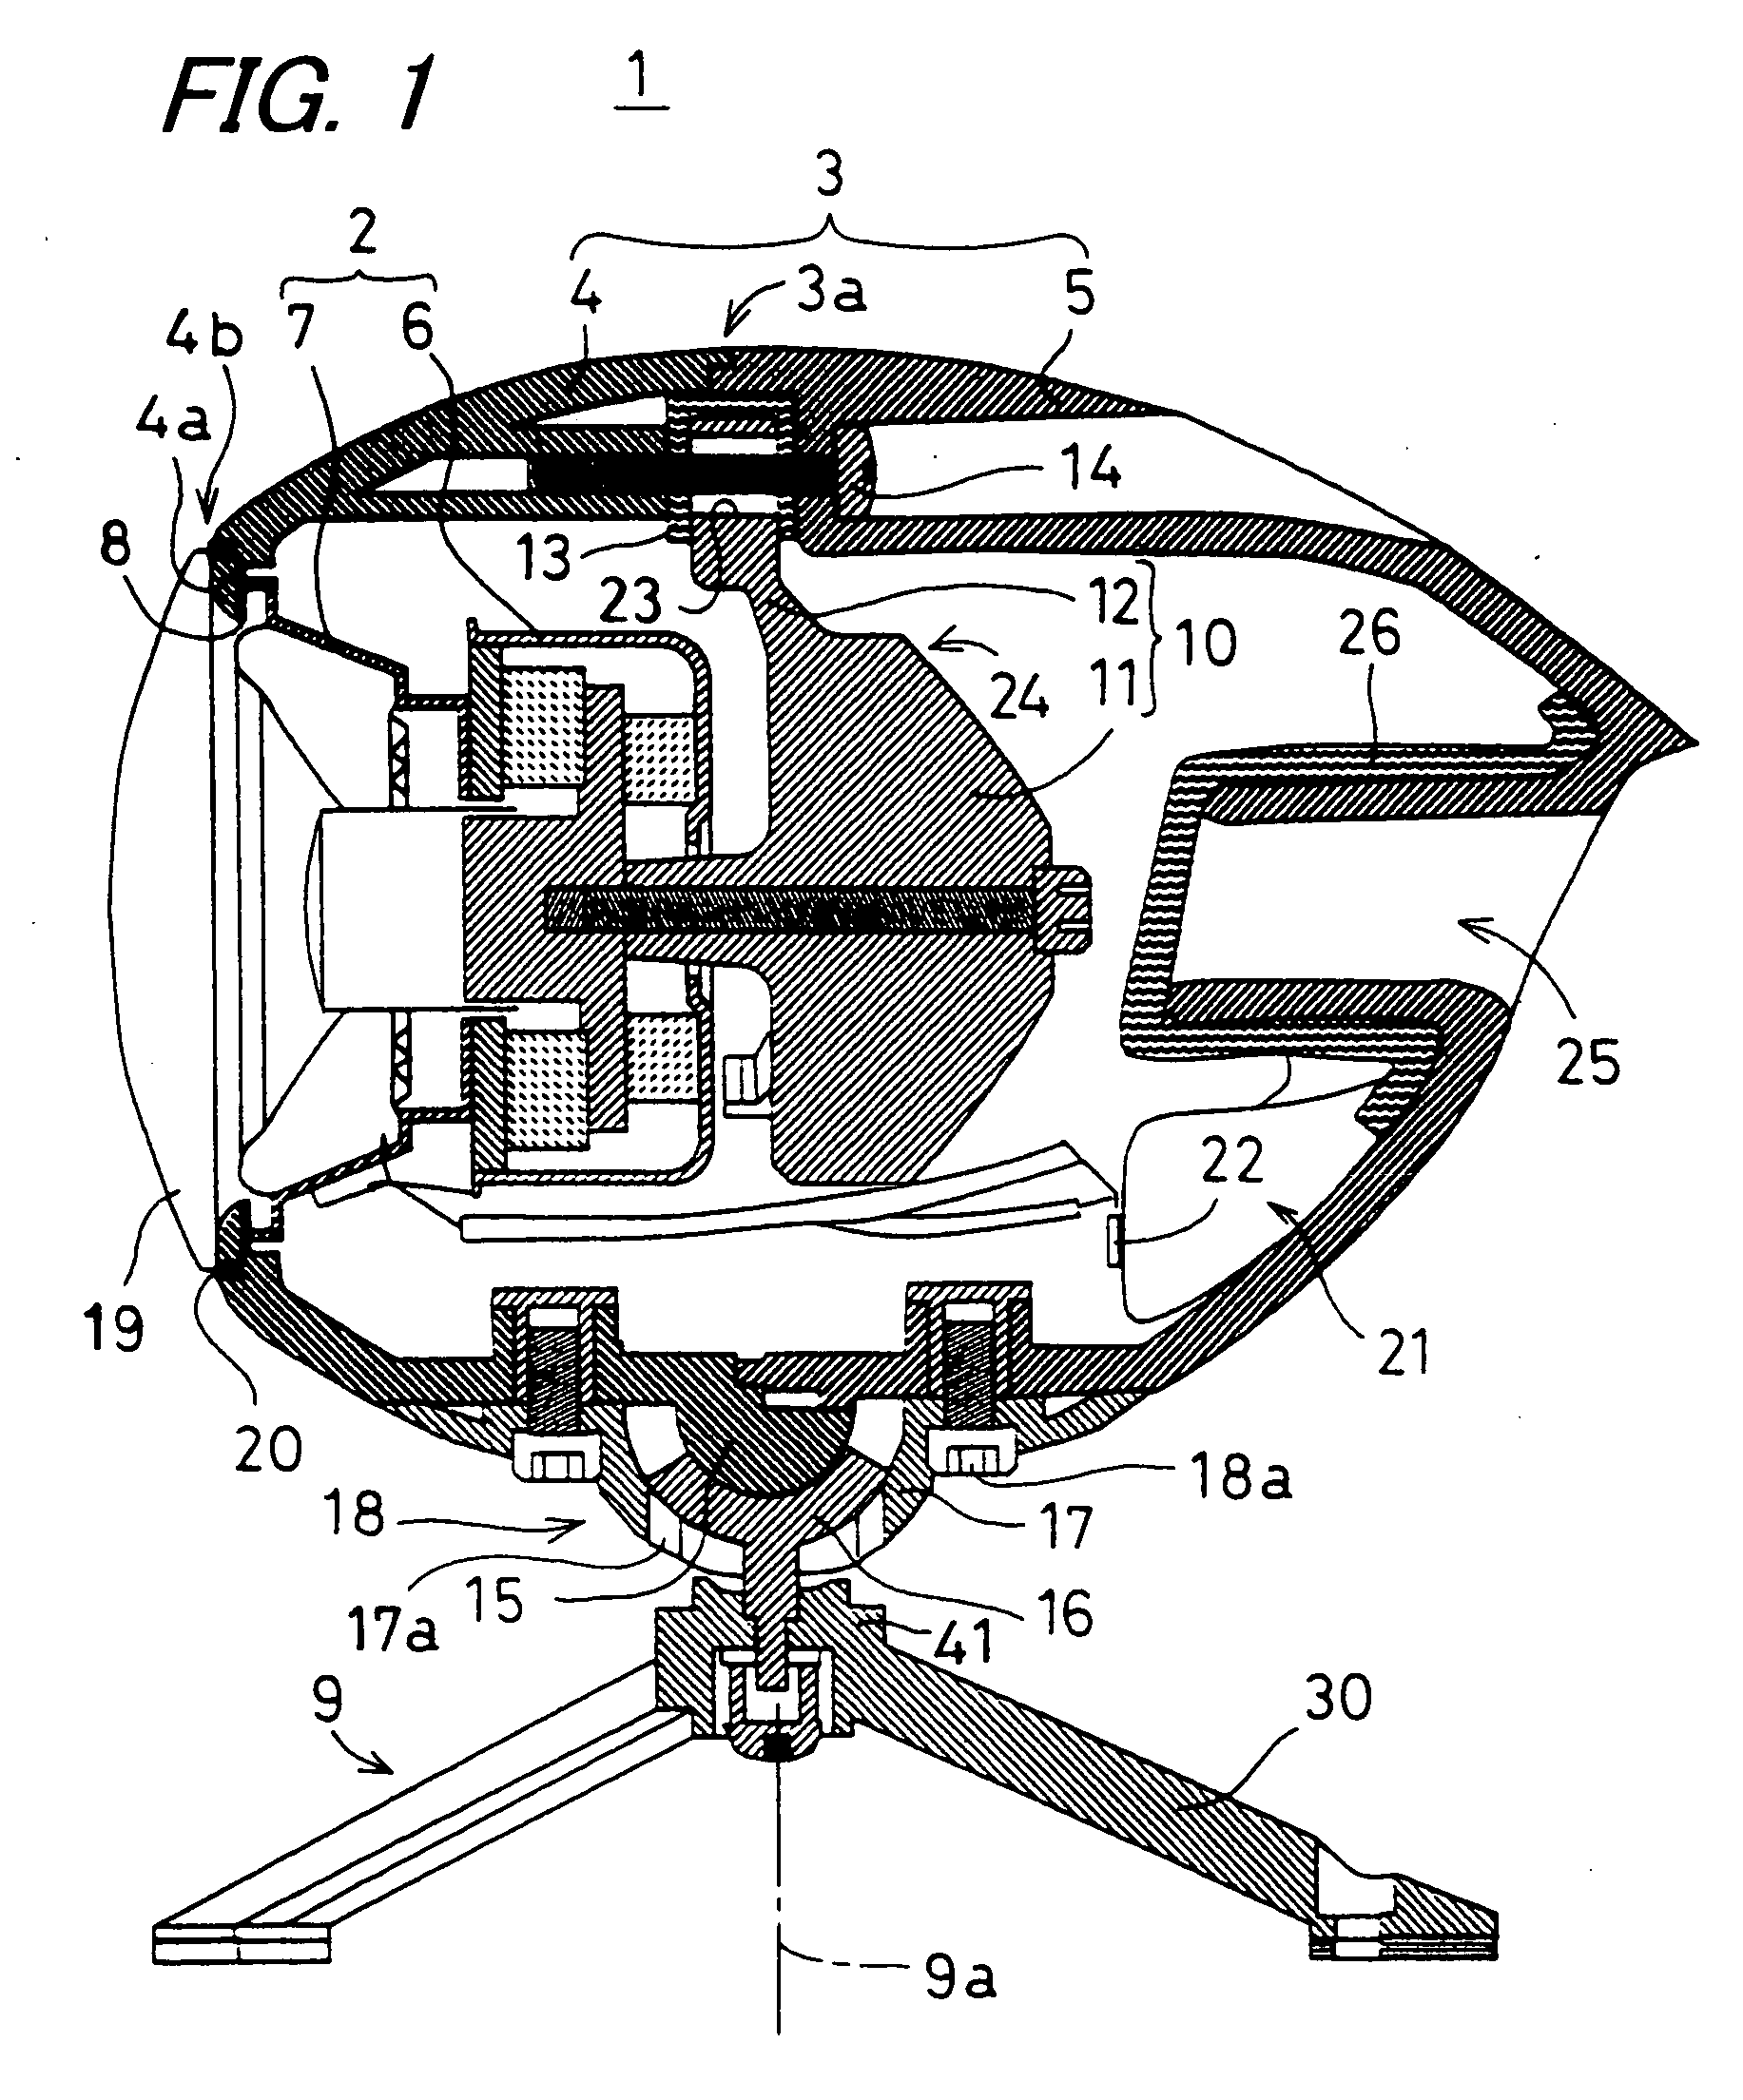 Speaker apparatus